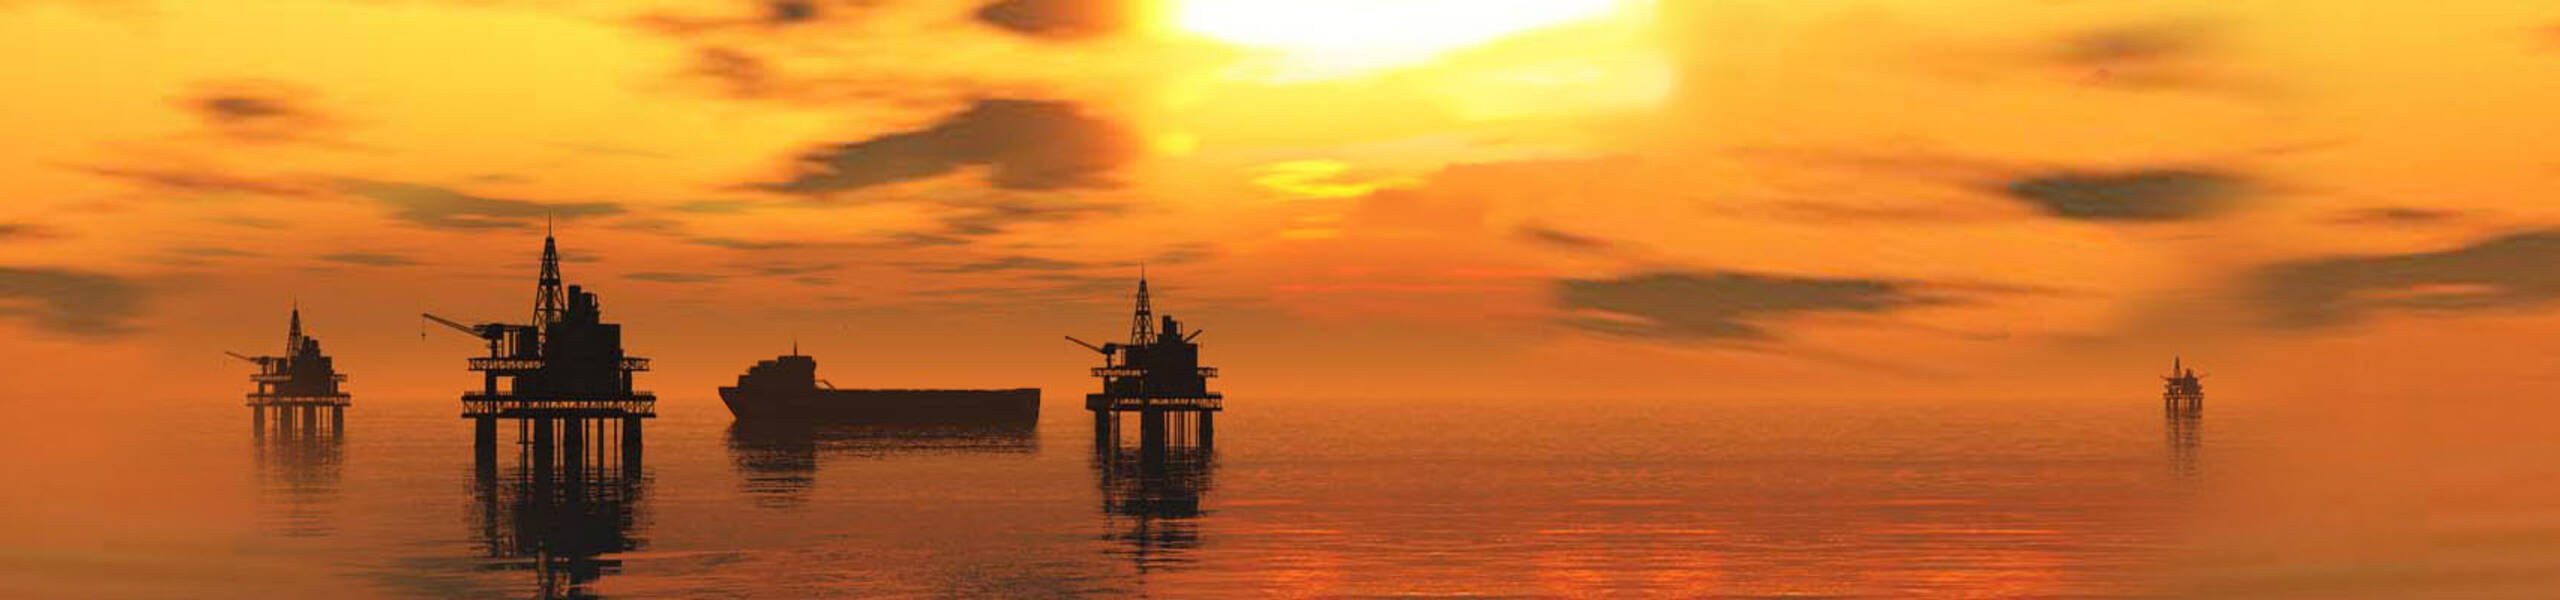 EIA: estoques de petróleo dos EUA aumentam 2,2 milhões de barris